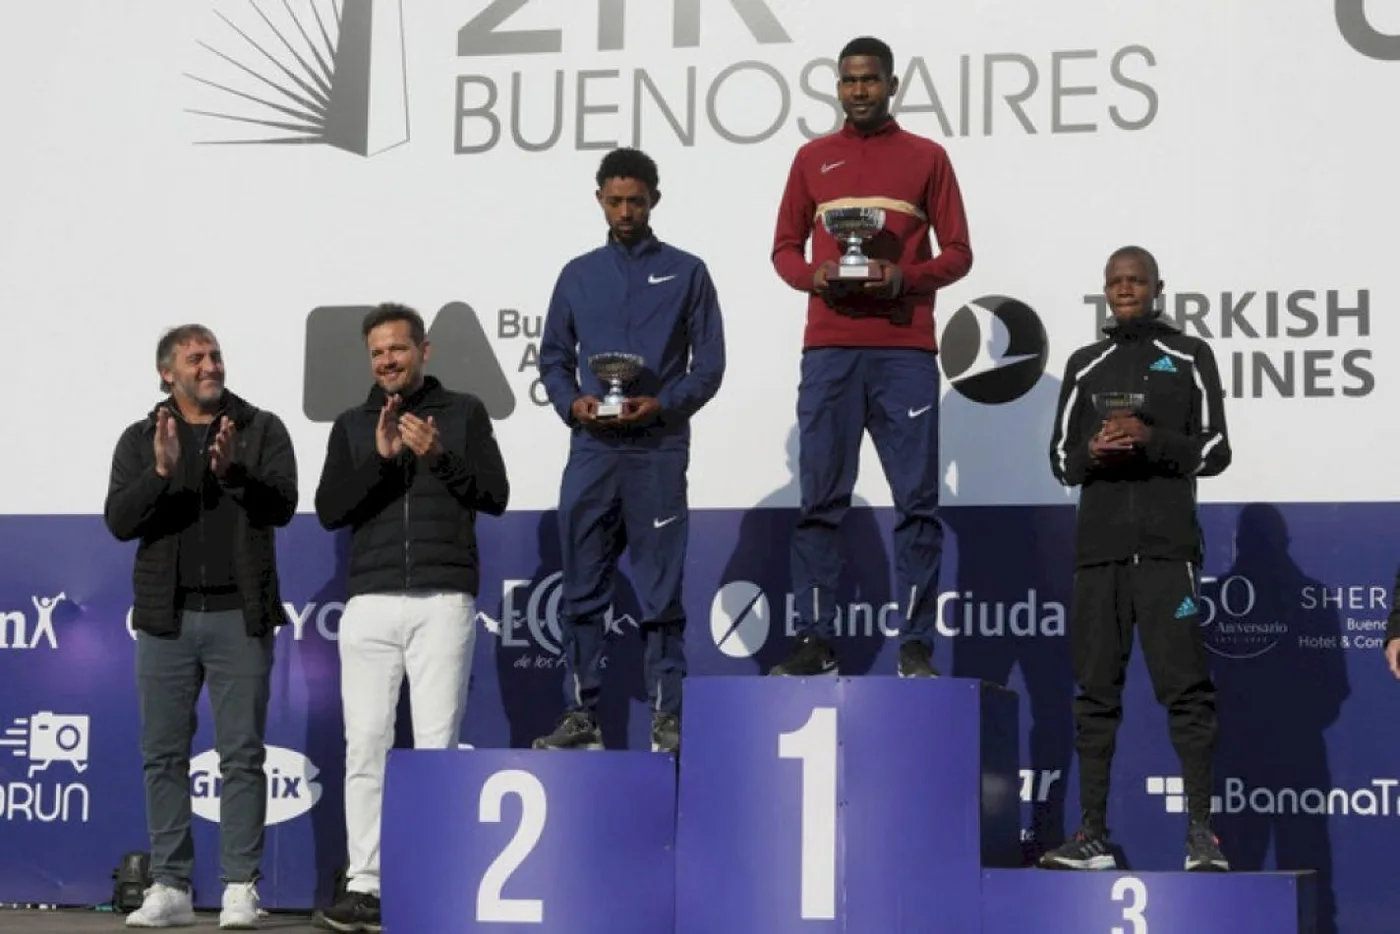 Media Maratón de Buenos Aires: ganaron un etíope y una keniata